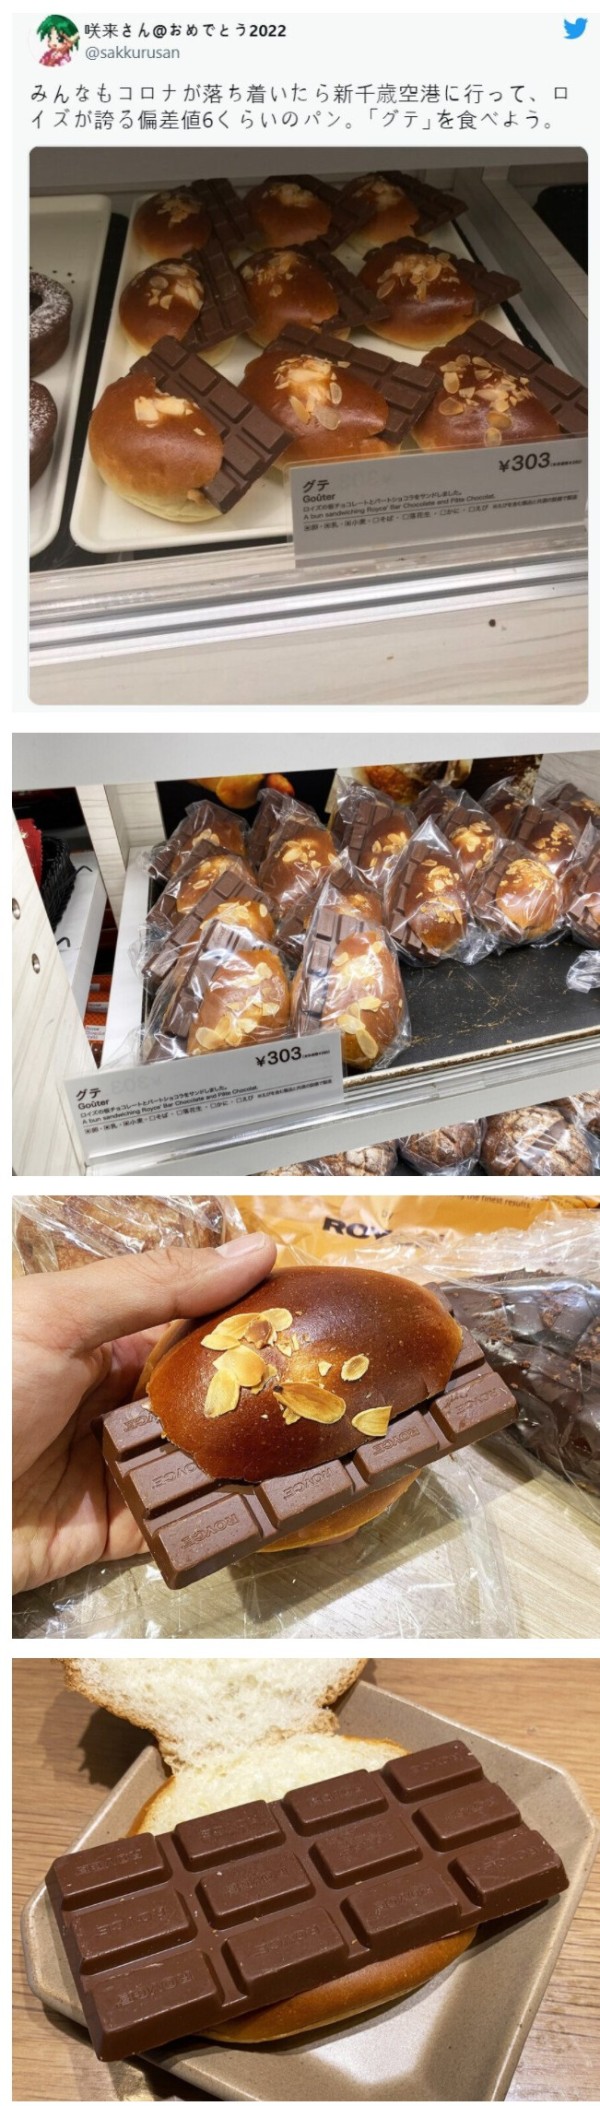 특이점이 온 일본의 초콜릿빵